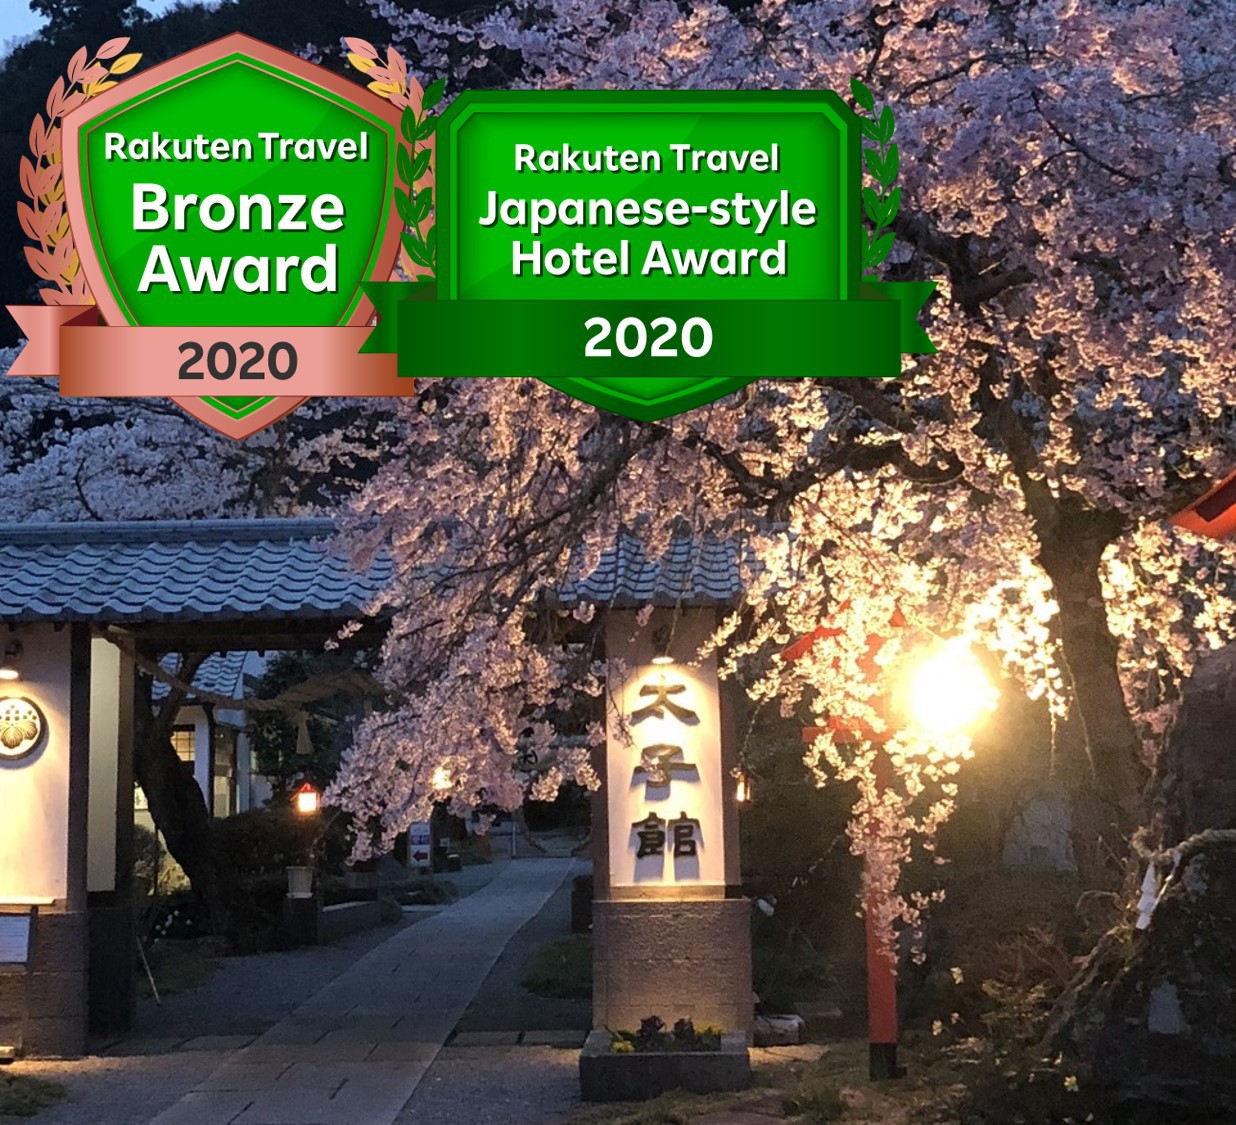 太平山で夜桜を楽しんだあとに、温泉宿に泊まりたいですが、30分圏内でお薦めありますか？